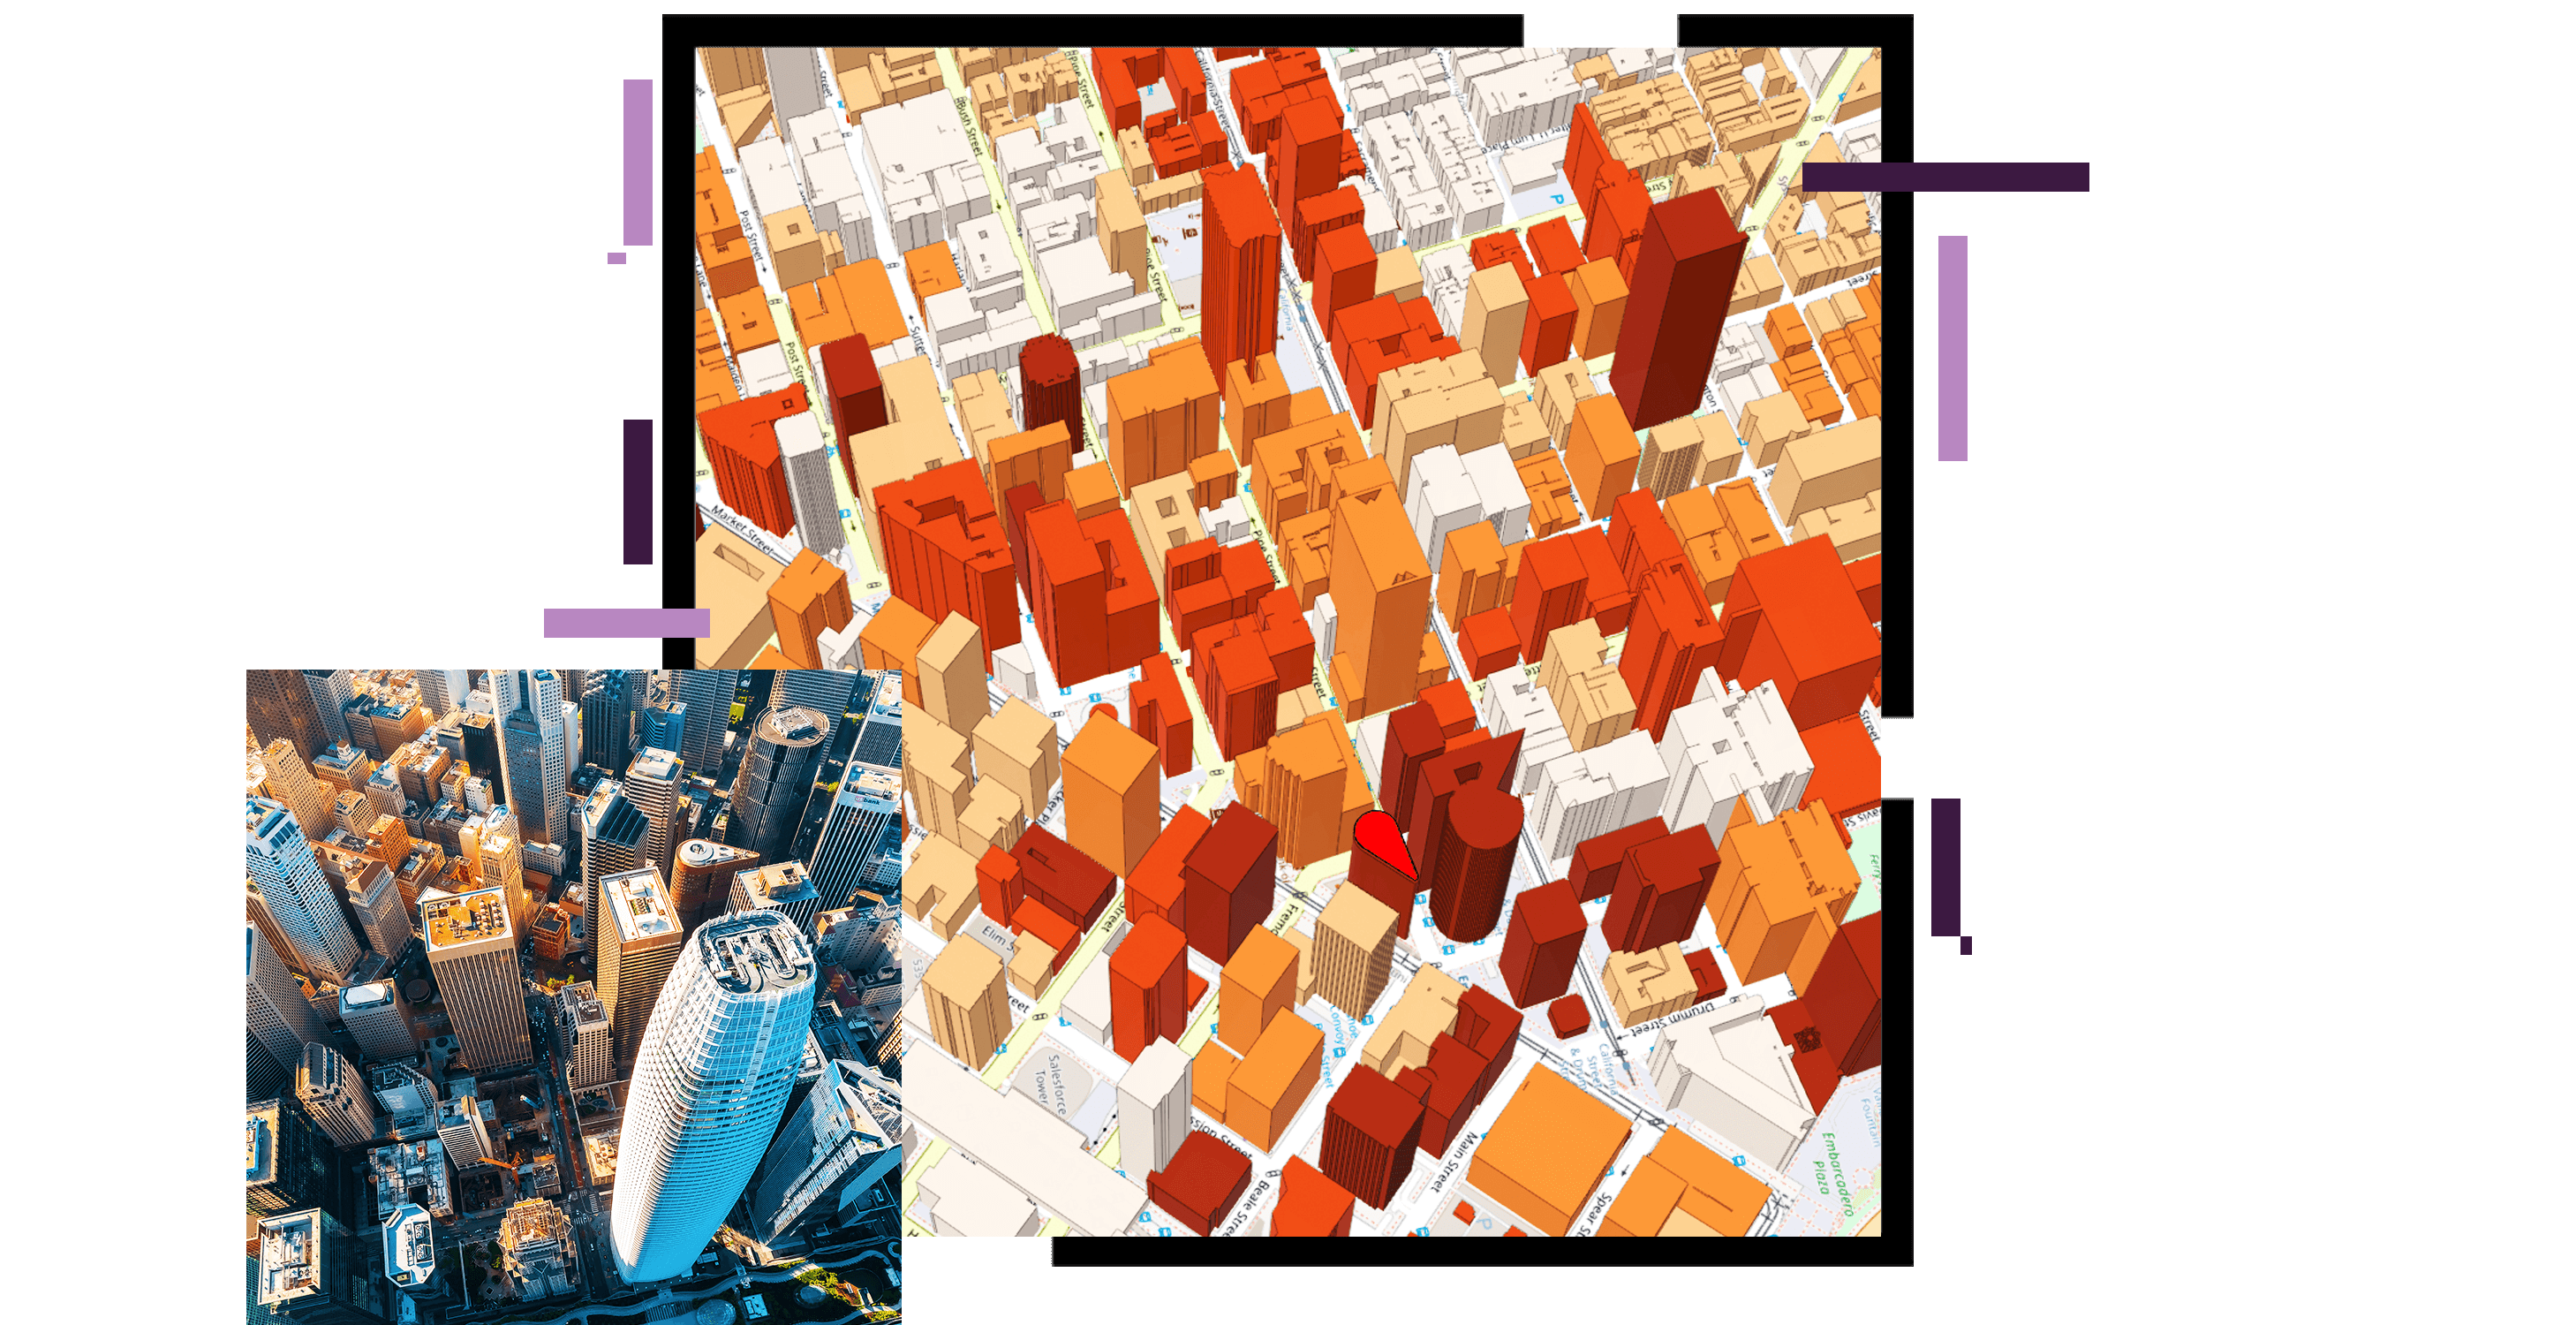 Vista aerea di un rendering 3D di una città piena di grattacieli ombreggiati in arancione e rosso accanto a una foto area corrispondente di una città reale